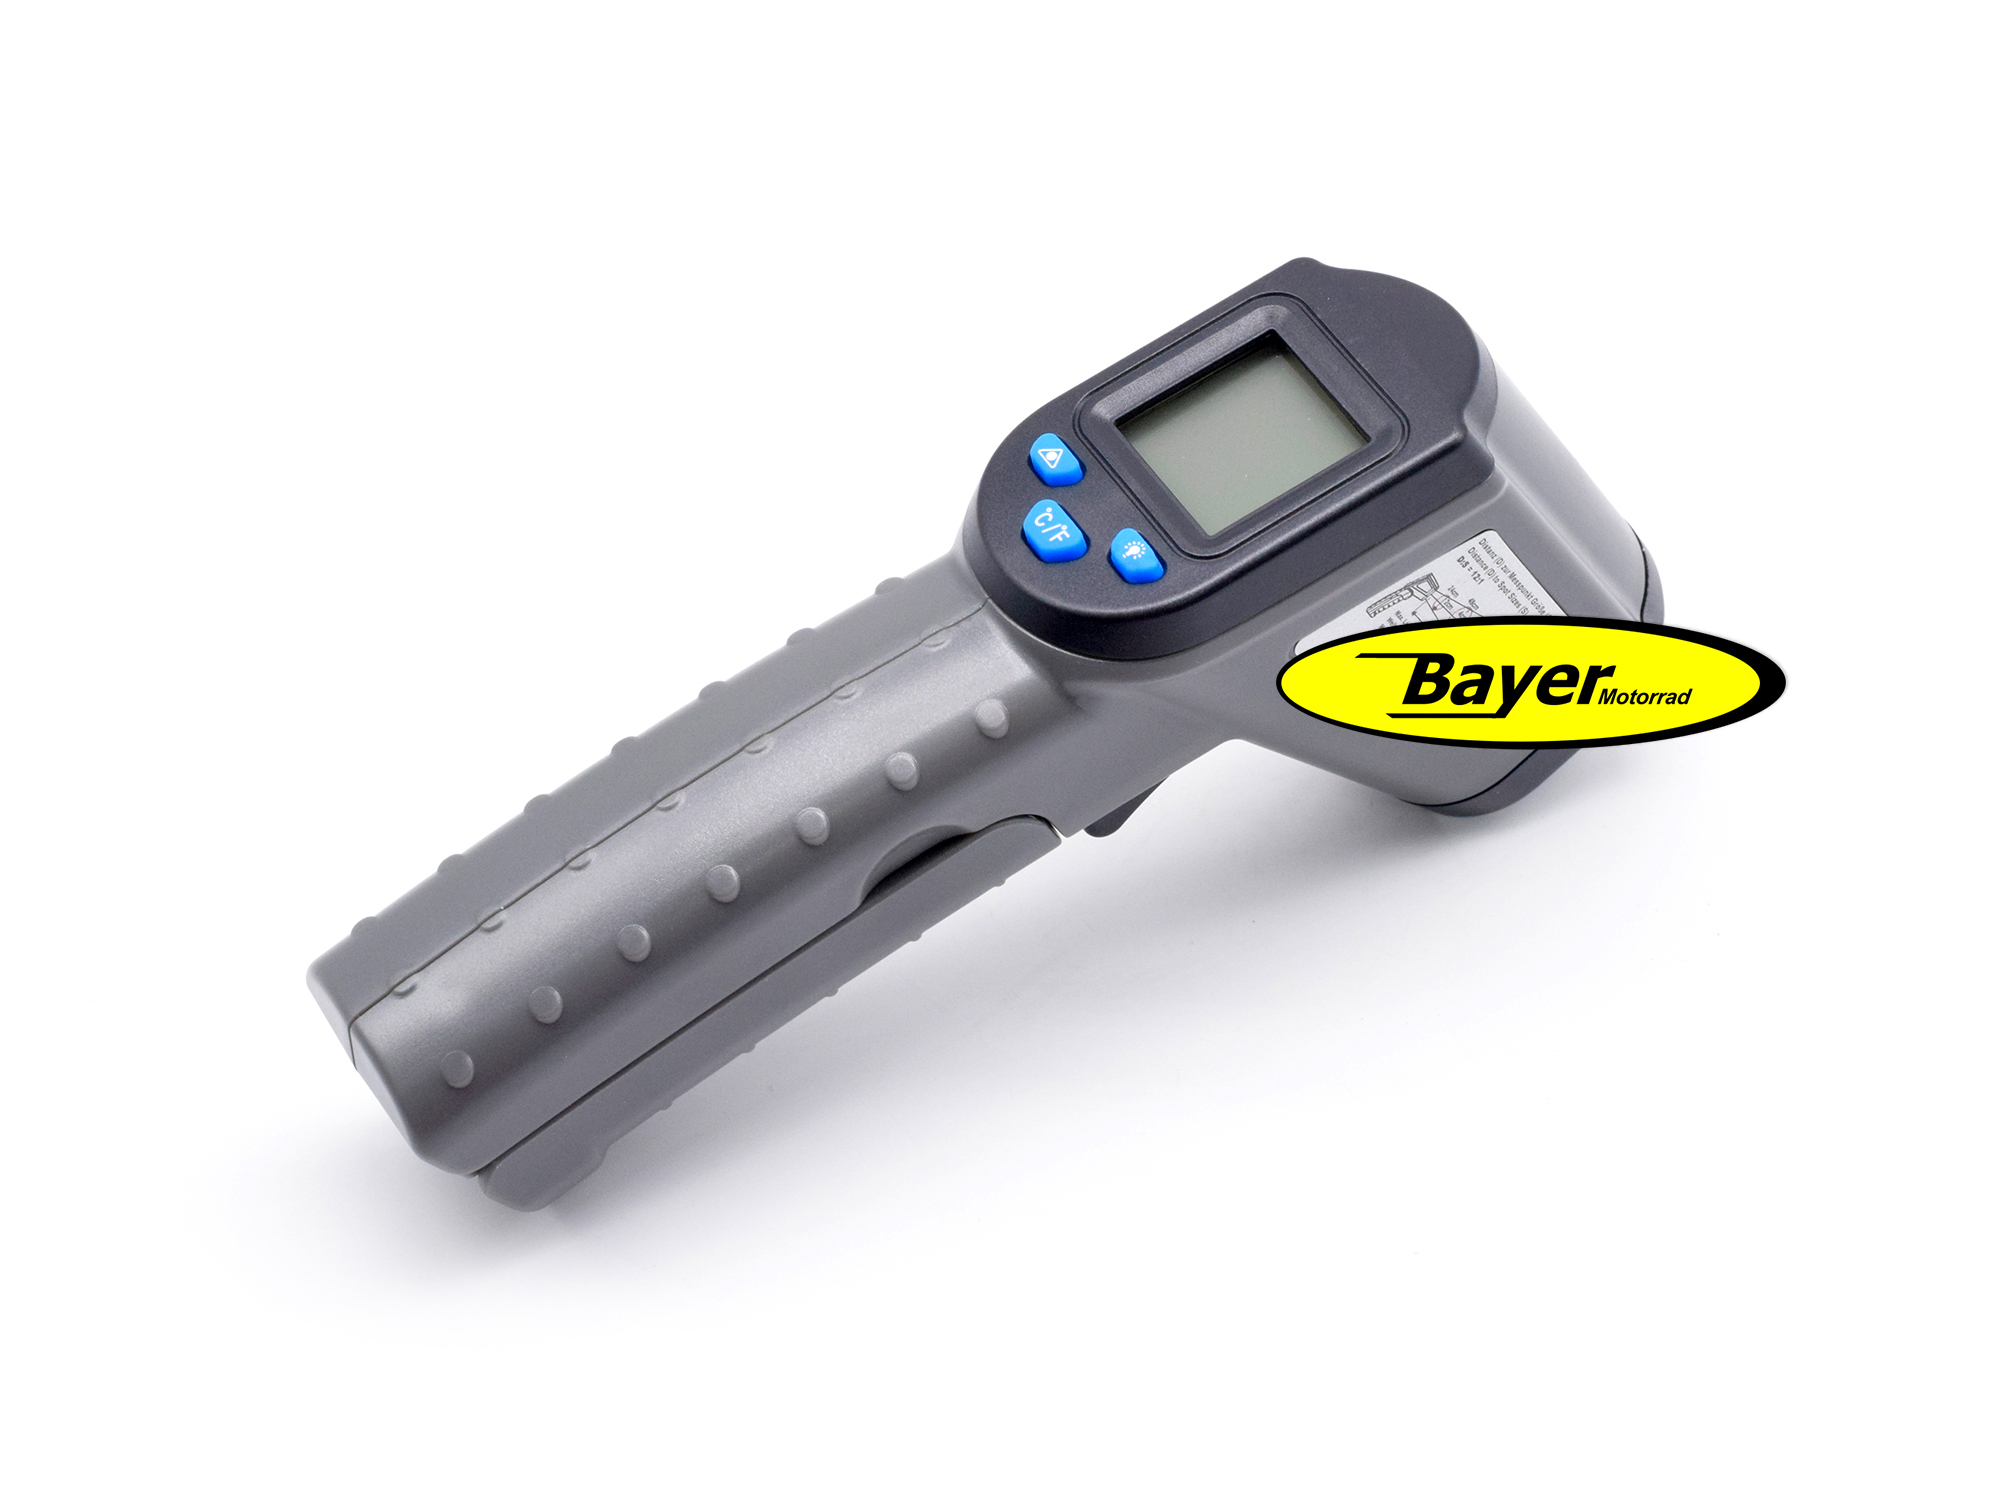 Motorrad-Digital Thermometer und 18-mm-/22-mm-Adapter, Motorrad